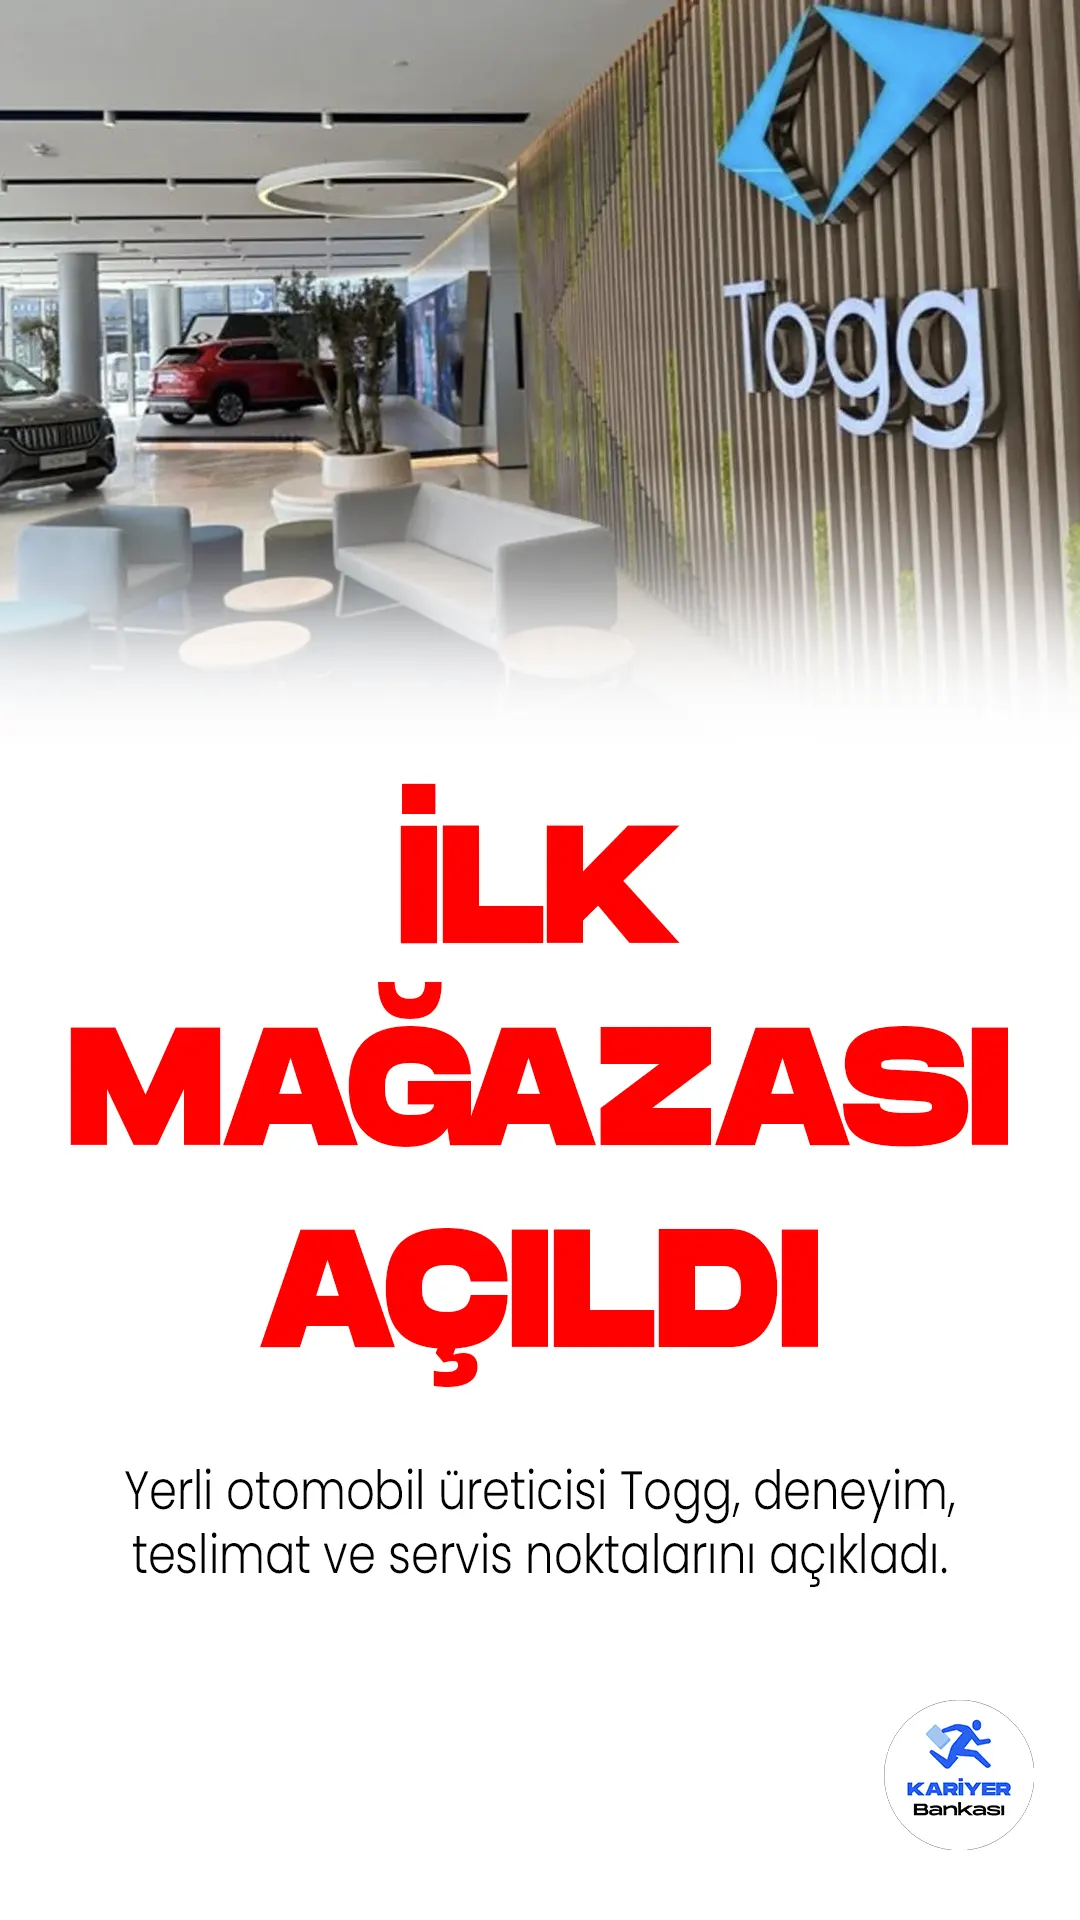 Yerli otomobil üreticisi Togg, deneyim, teslimat ve servis noktalarını açıkladı. İstanbul, İzmir, Bursa, Adana ve Ankara'da yer alan merkezlerin yanı sıra, diğer şehirlerde de deneyim, teslimat ve servis hizmetleri sunulacak.